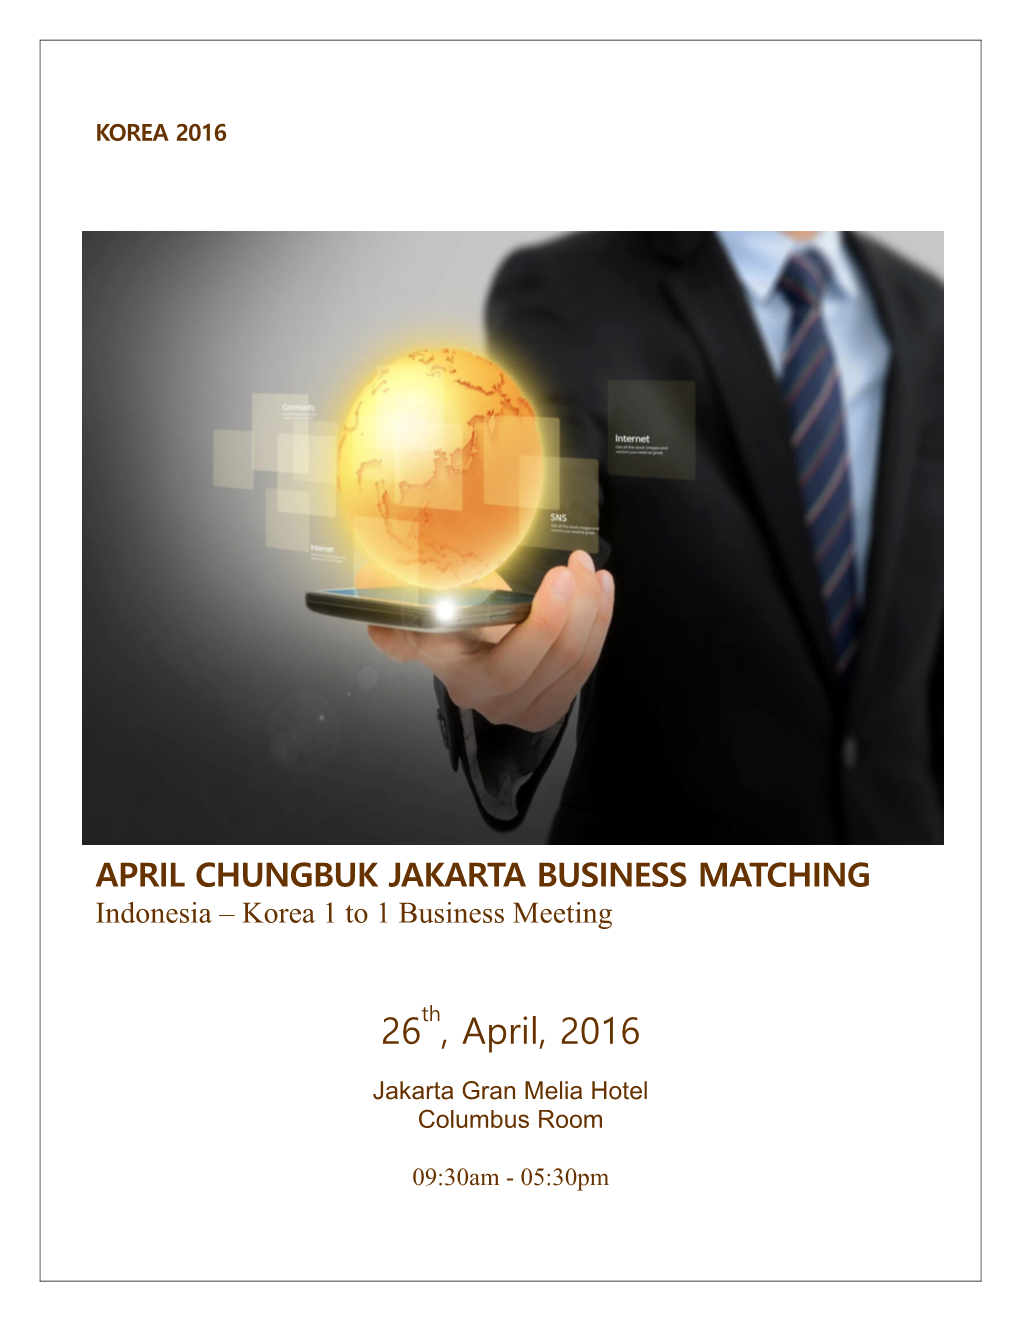 April Chungbuk Jakarta Business Matching